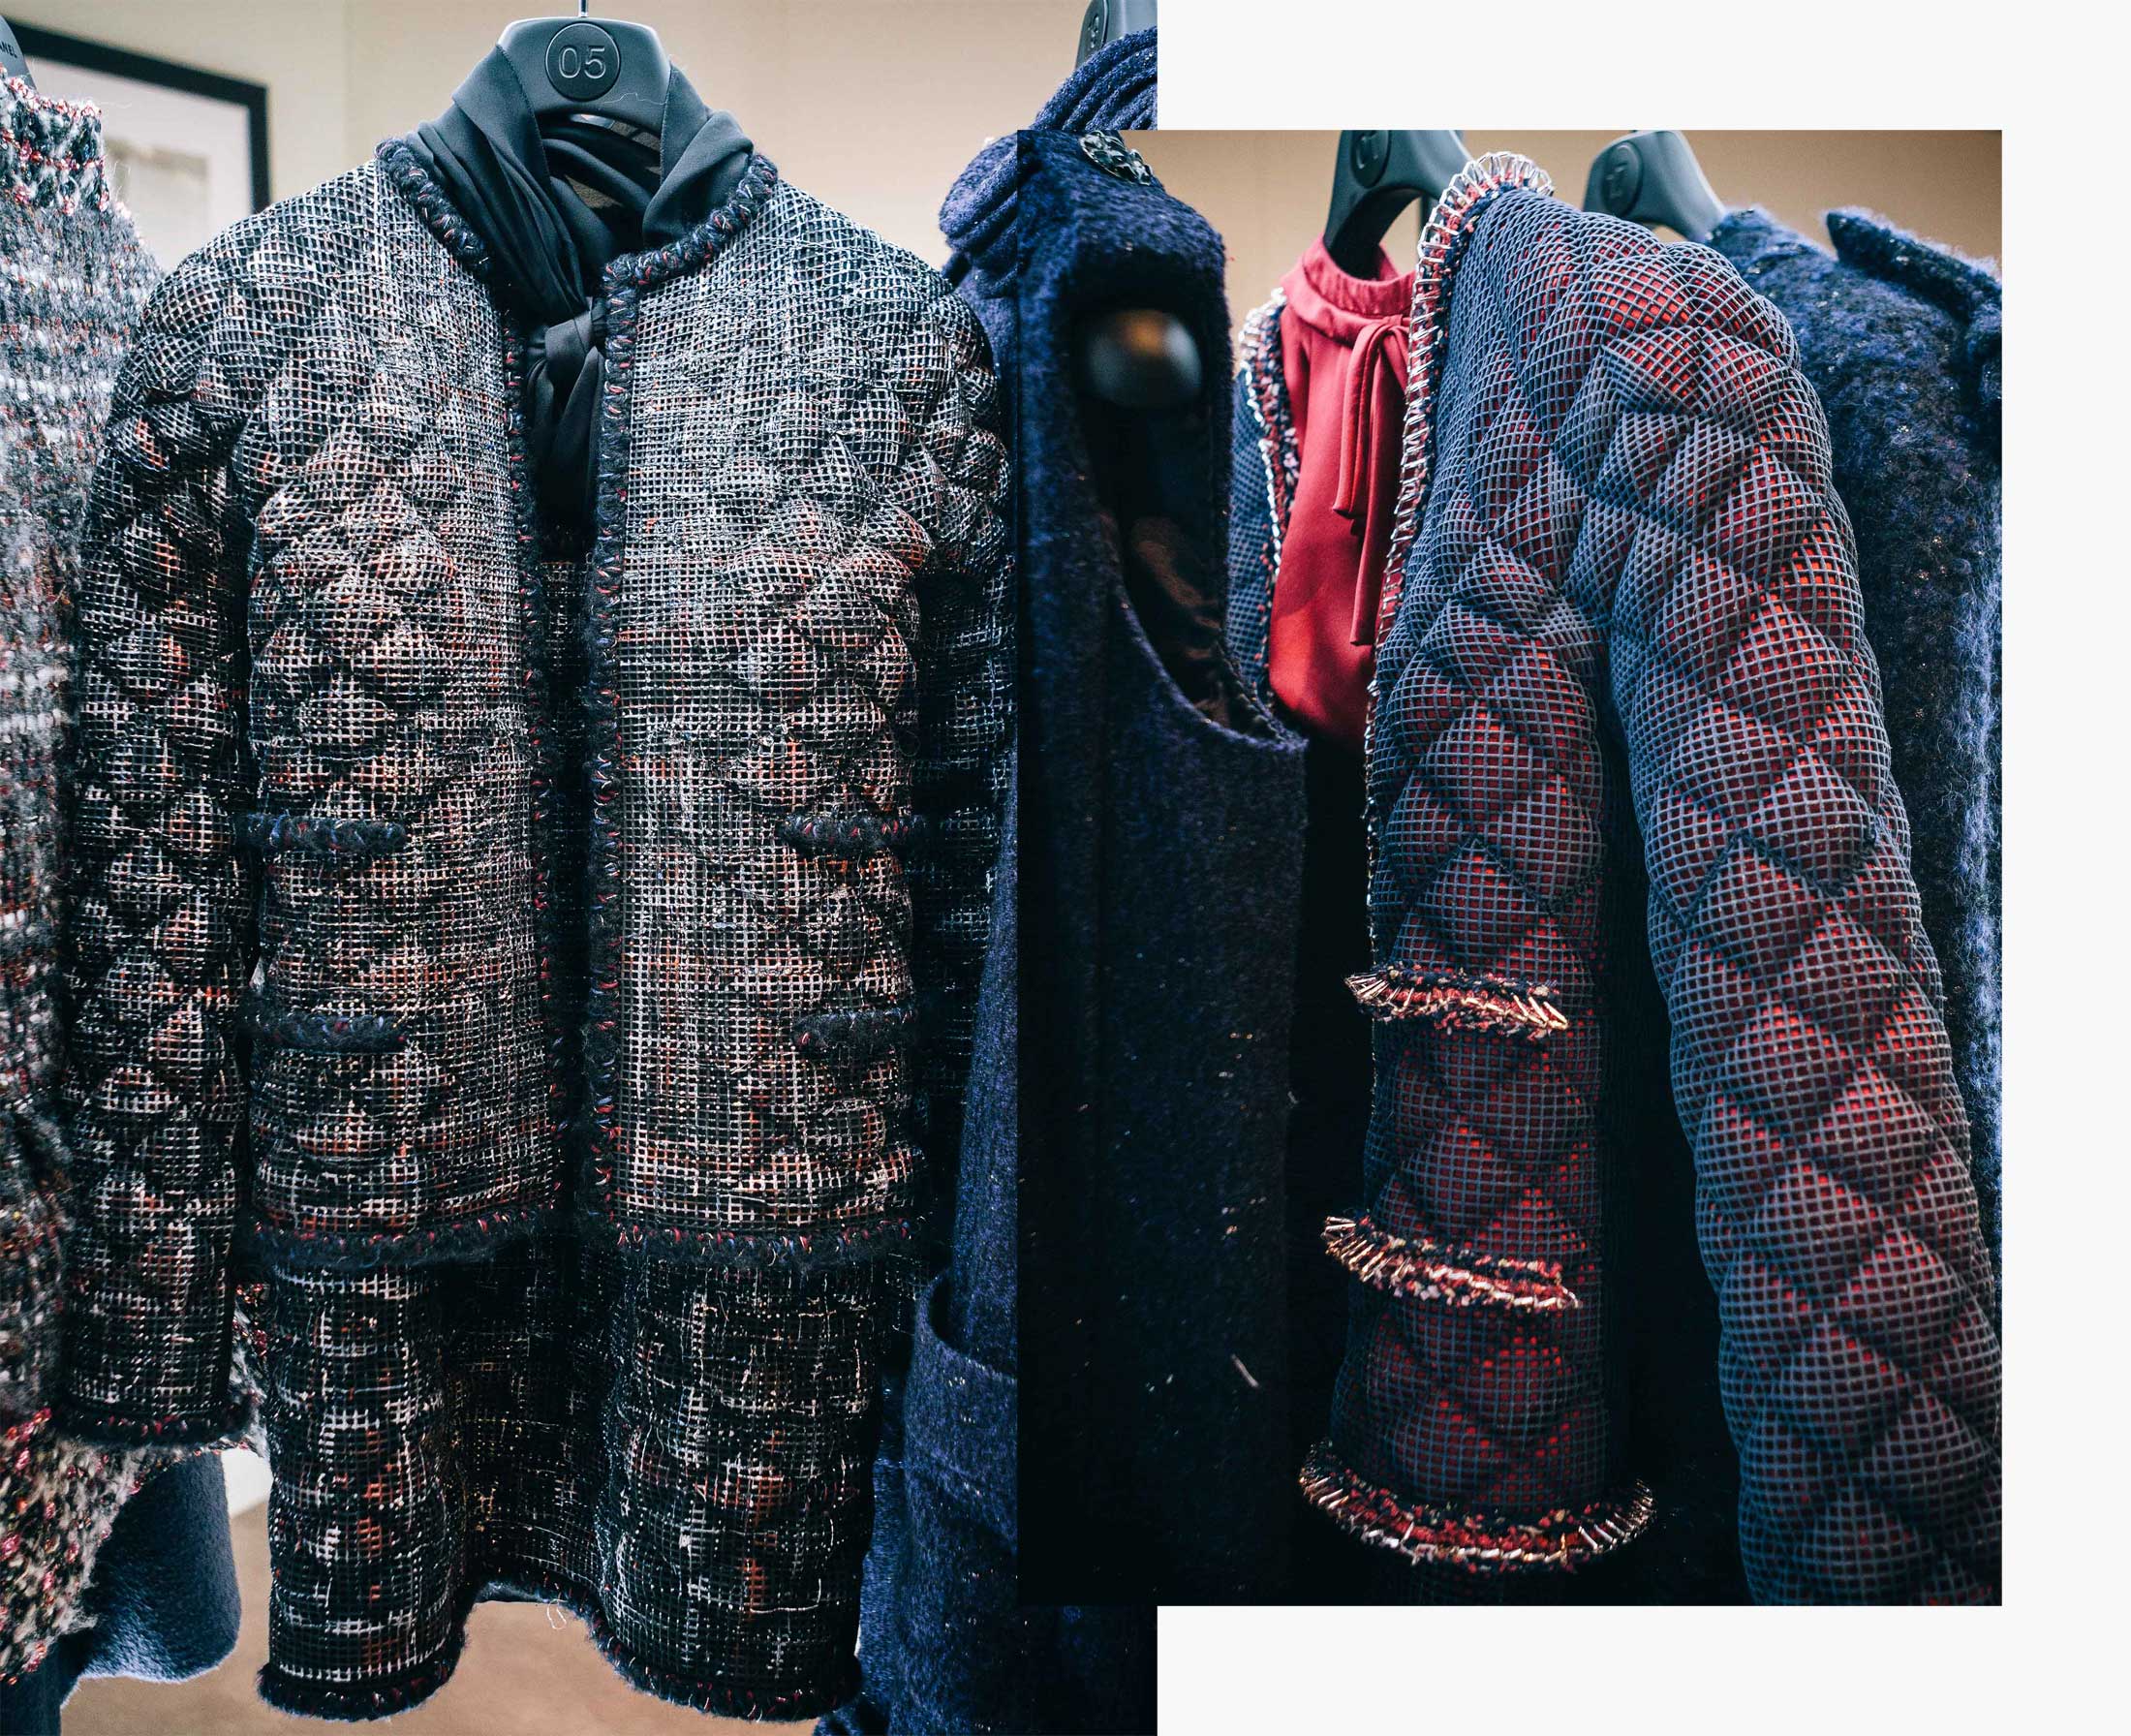 The Chanel Casino collection, Chanel Haute Couture Autumn Winter 2015, Chanel Fall Winter 2015, Alta Costura, Automne Hiver